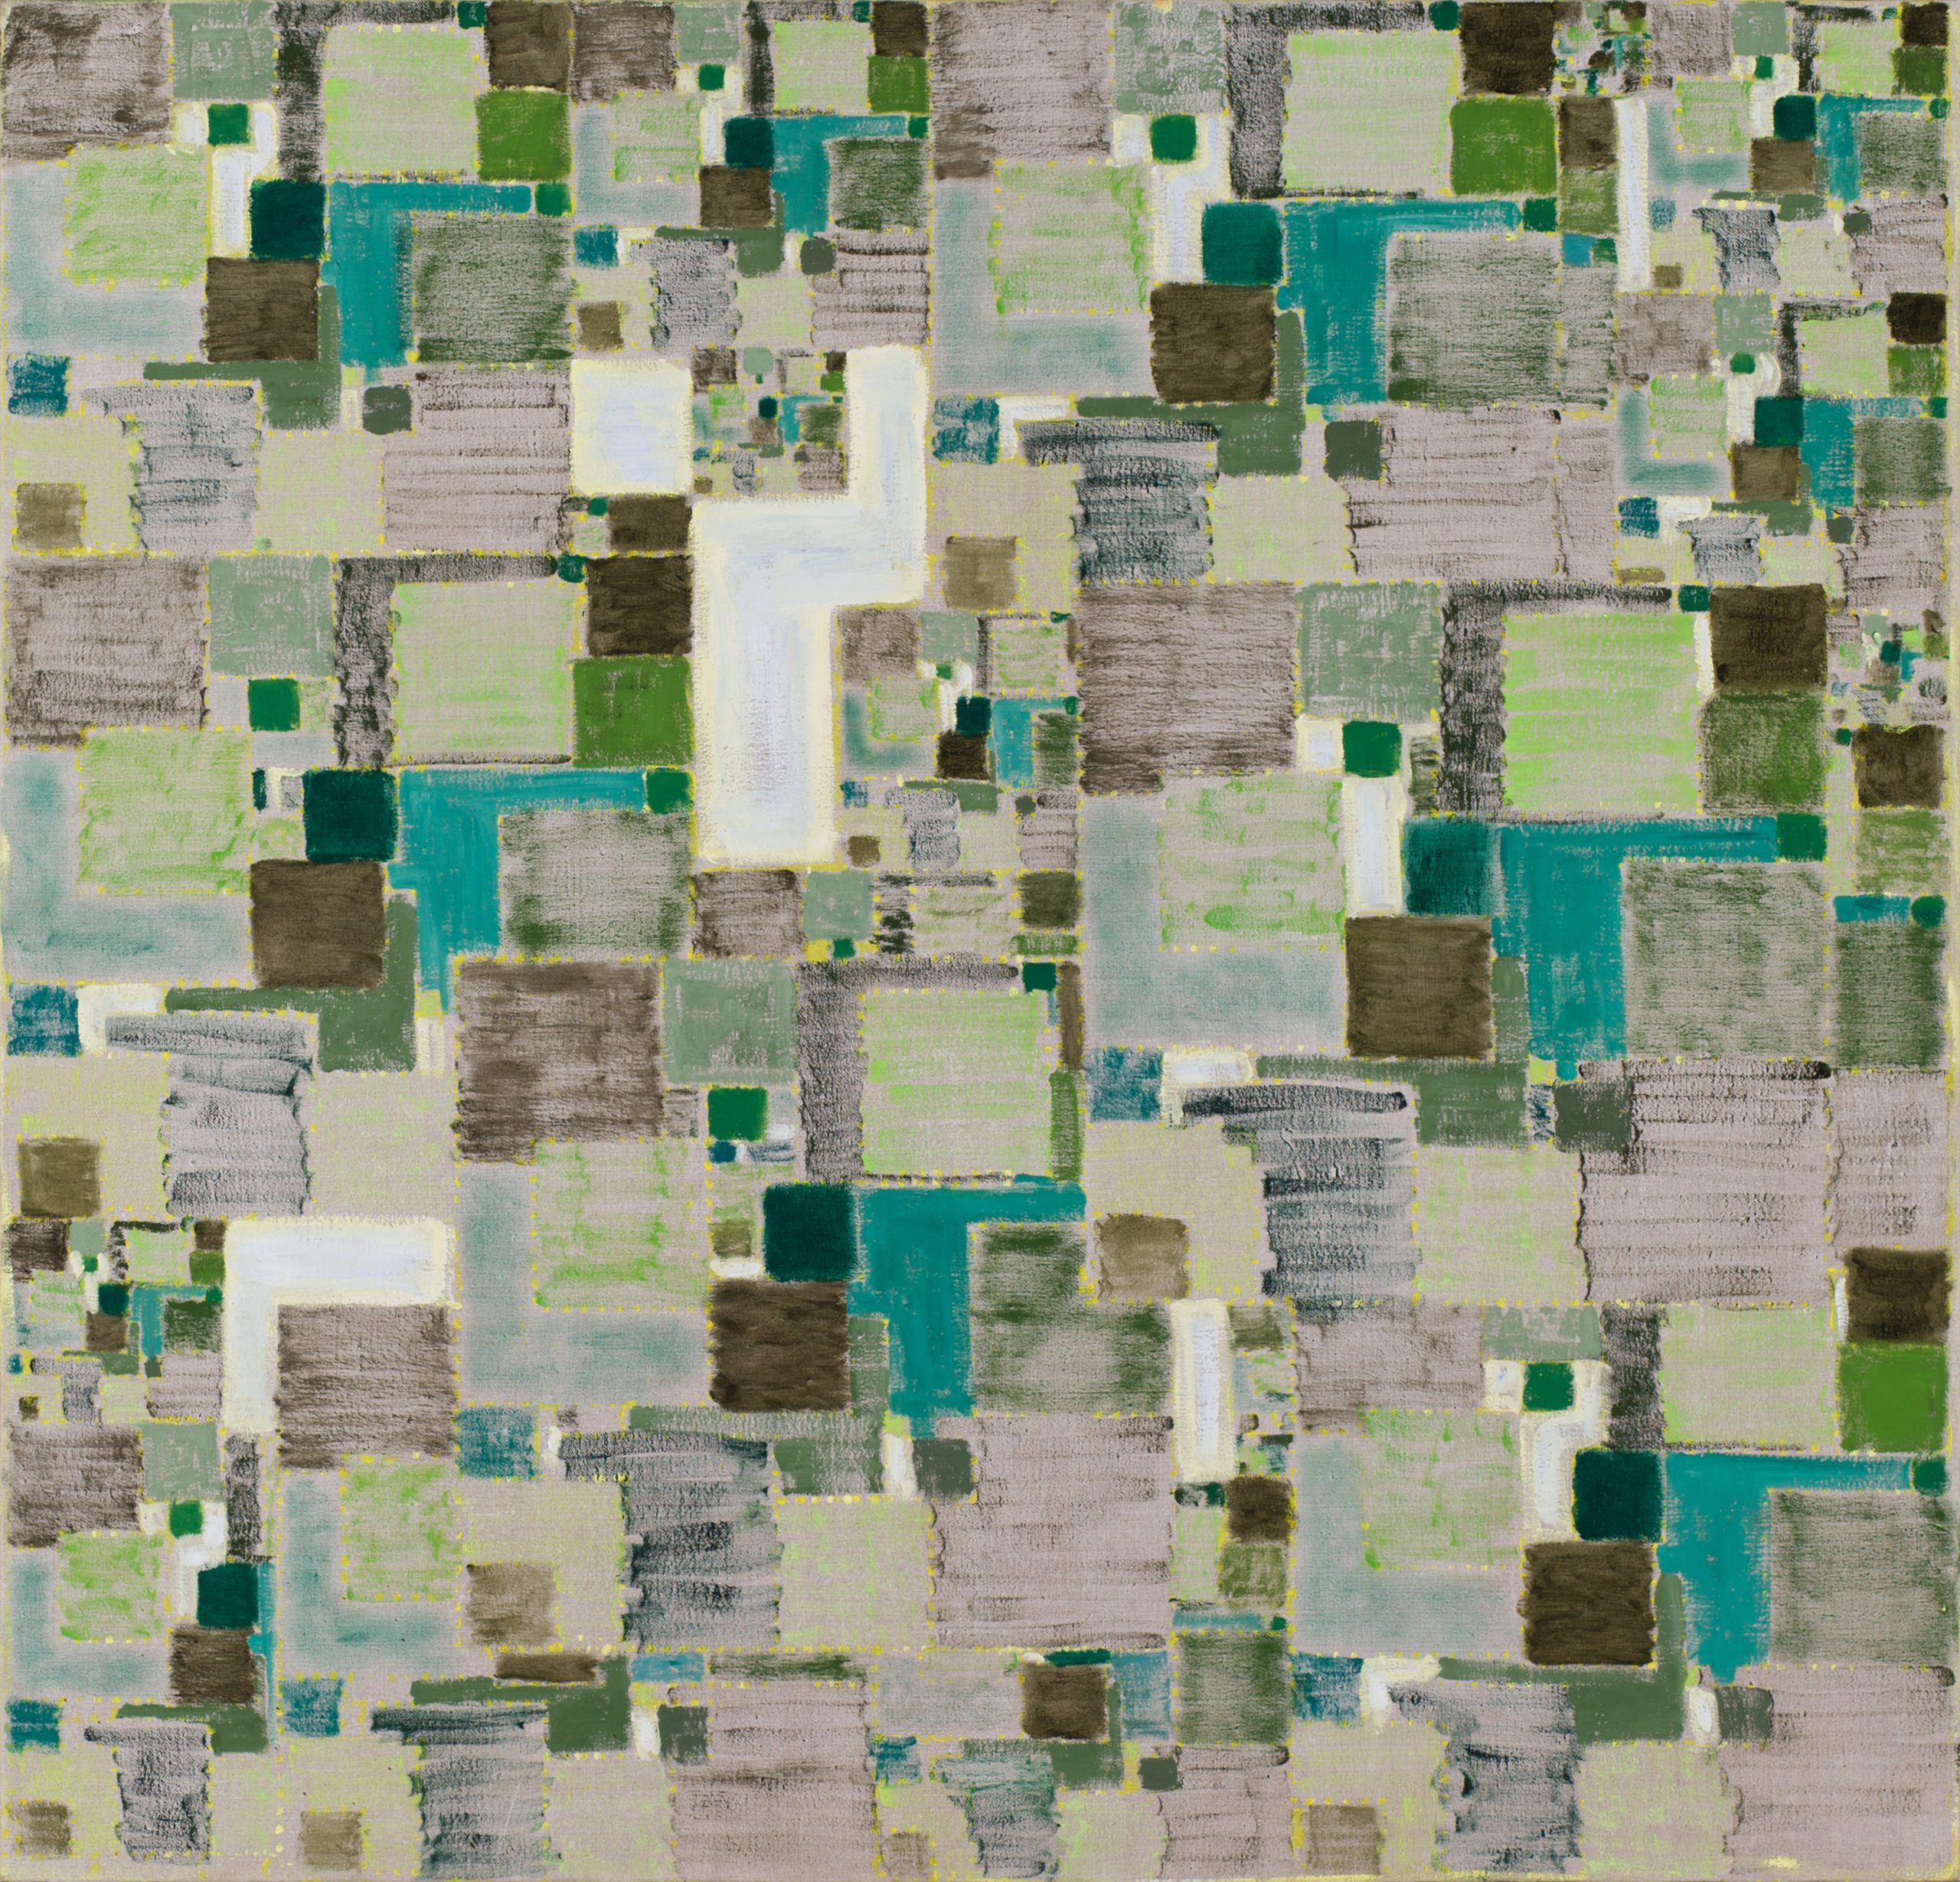 16_弗拉基米爾・可可利亞，《梣樹之二》，2013，油彩、畫布，137 x 142.3公分。藝術家與臺北市立美術館提供。